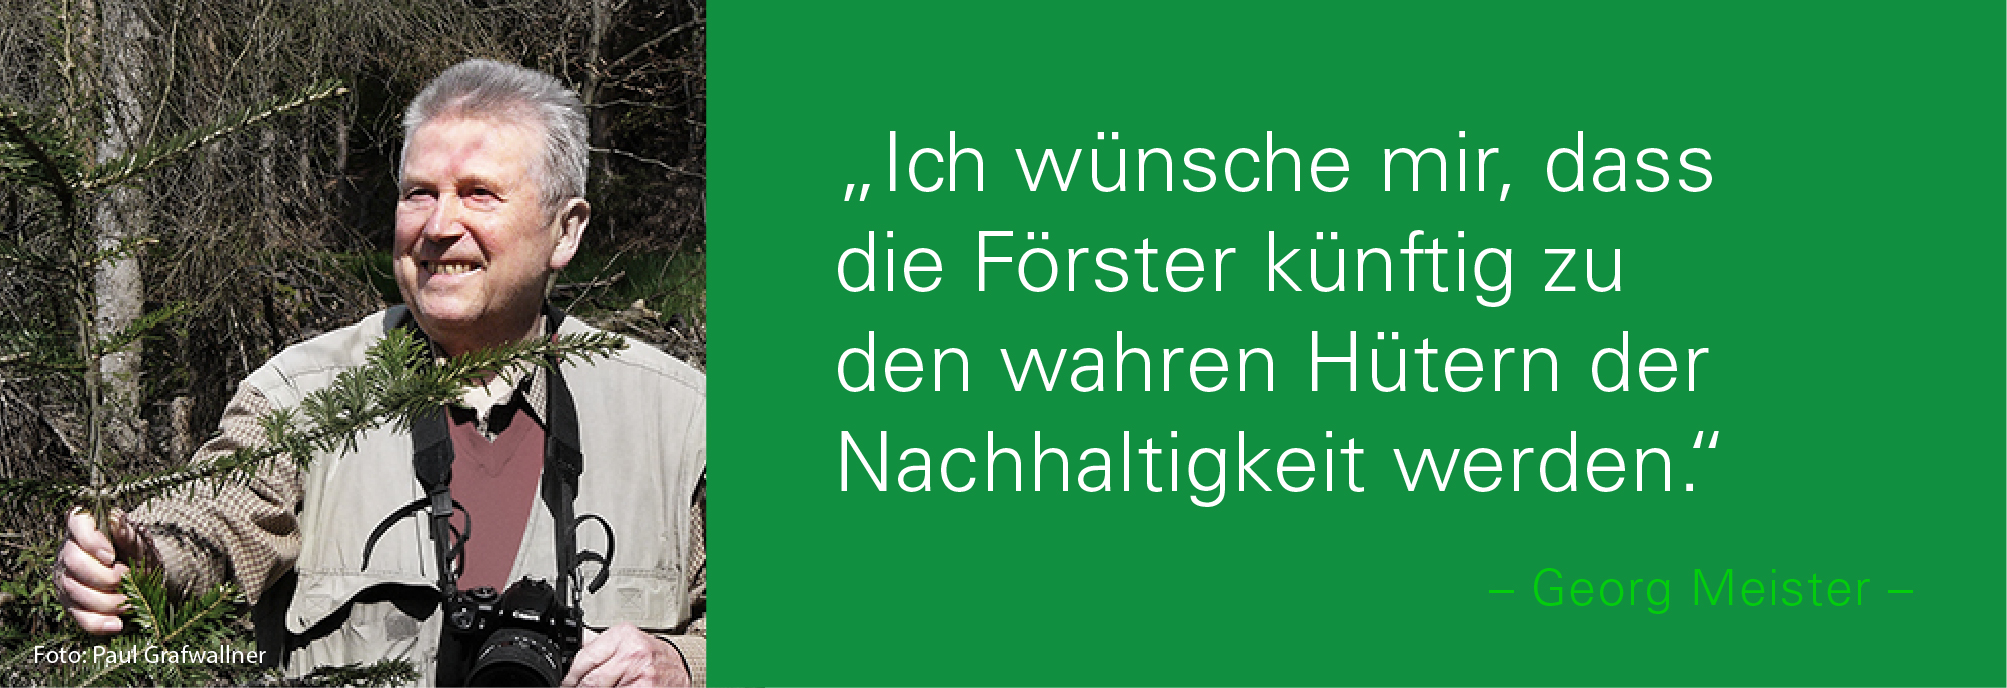 Porträt von Georg Meister mit dem Zitat: Ich wünsche mir, dass die Förster künftig zu den wahren Hütern der Nachhaltigkeit werden.